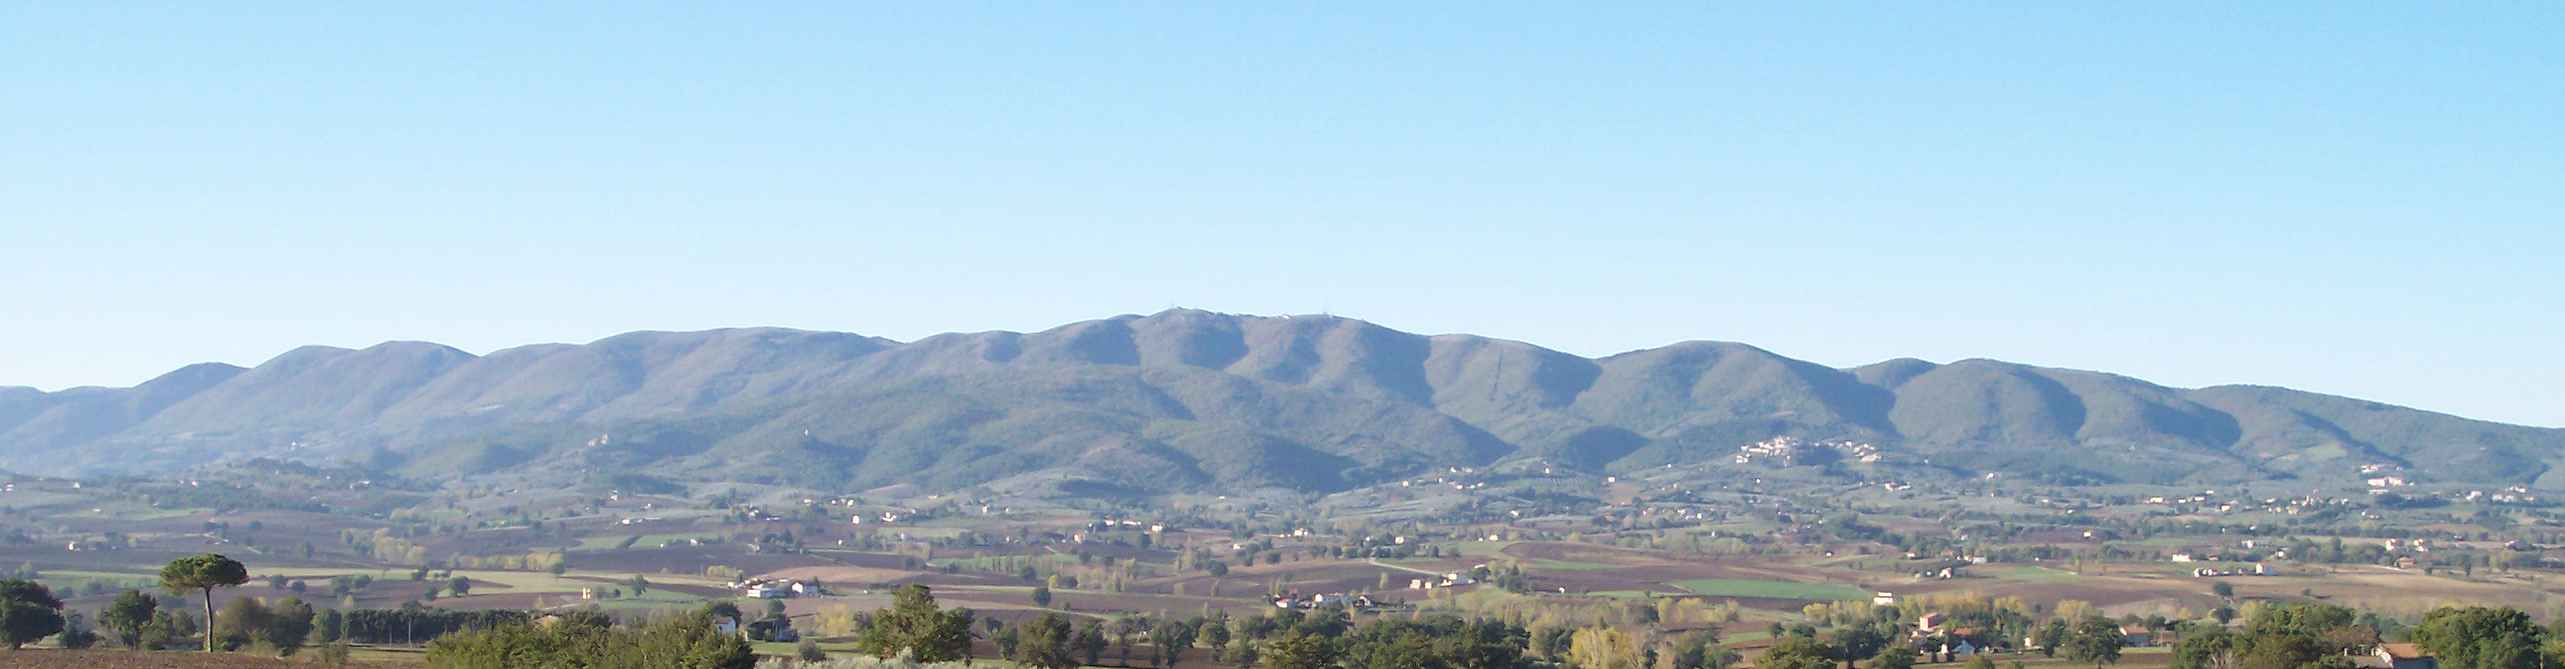 I Monti Martani visti da una frazione di Montefalco